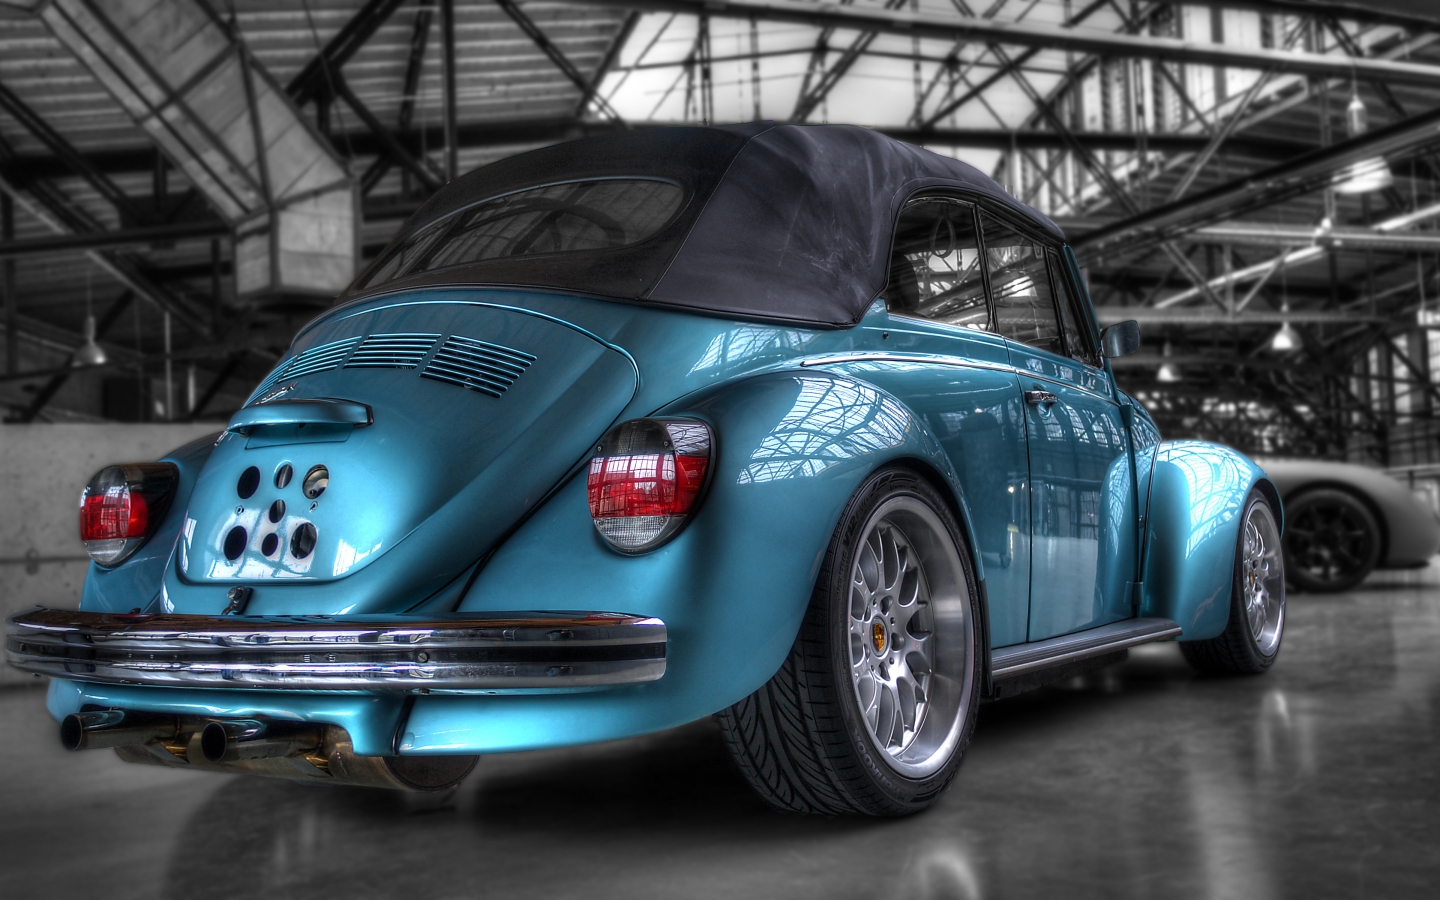 Volkswagen Super Beetle for 1440 x 900 widescreen resolution